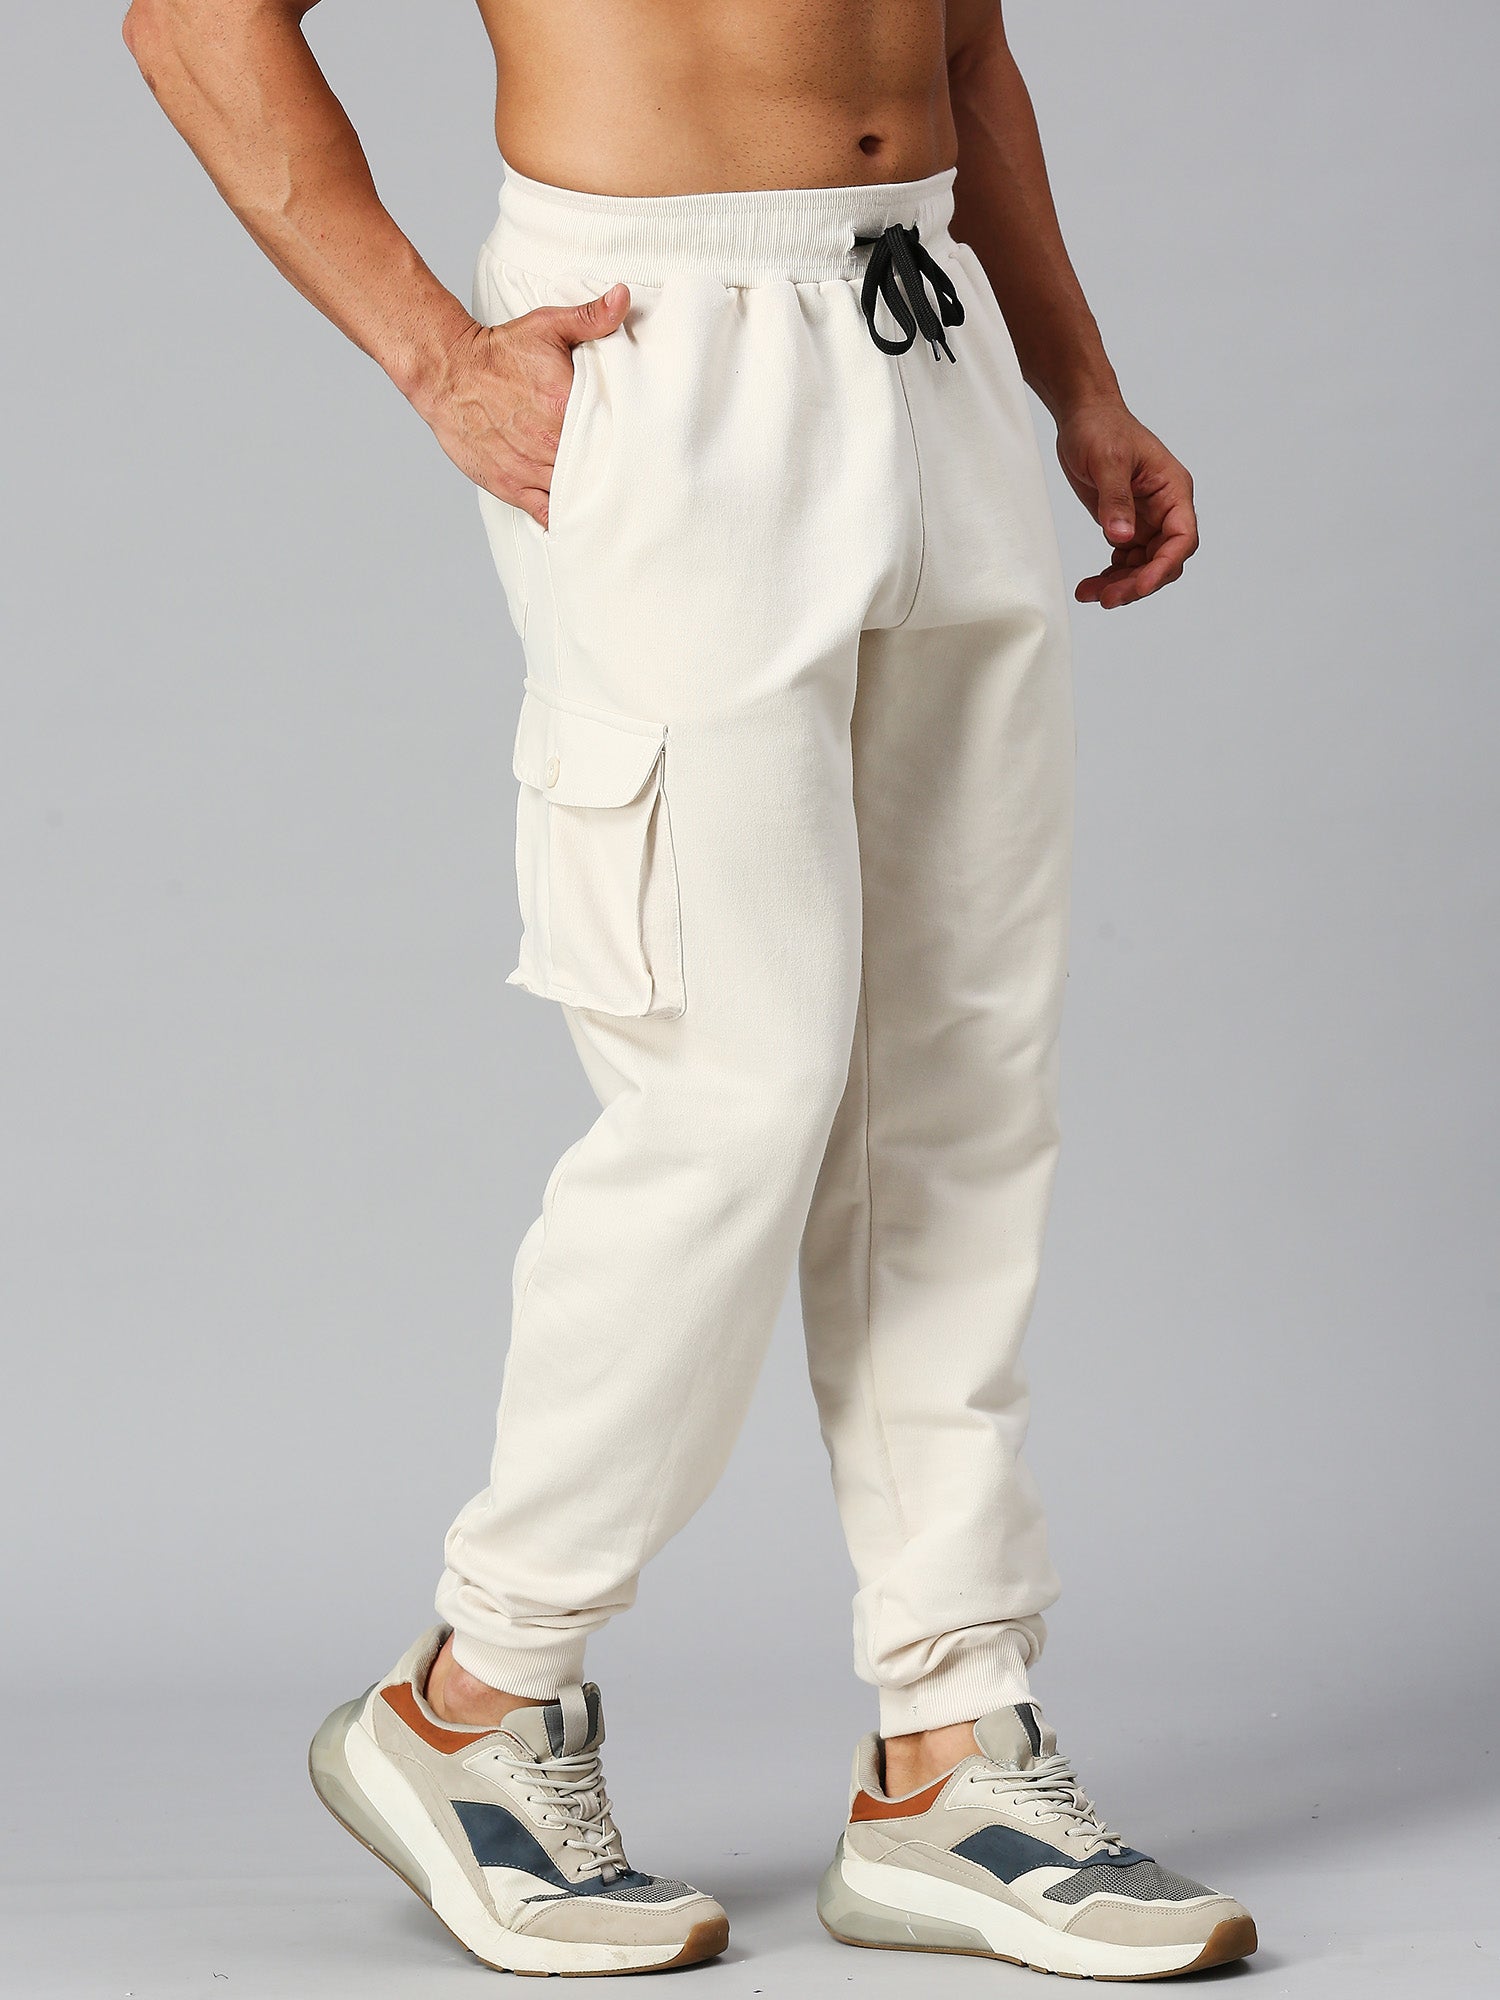 Buy Bewakoof Men's Solid Cotton Cargo Pants - Oversized Fit_582927_Grey_32  at Amazon.in